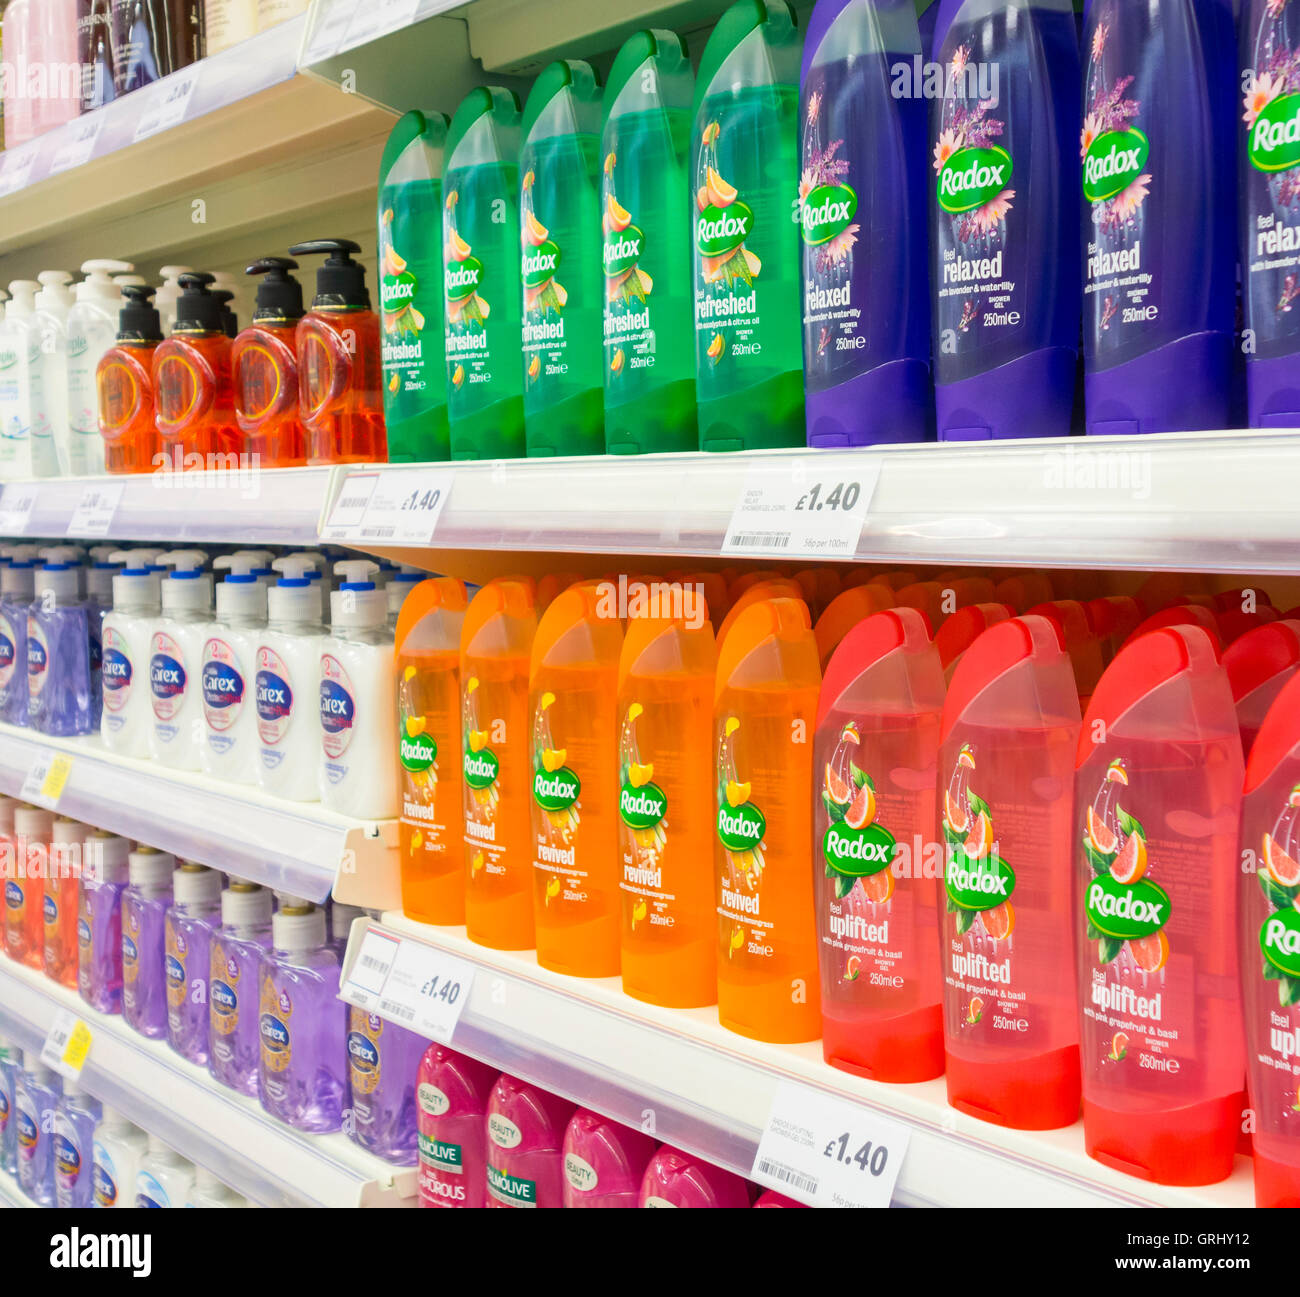 Gel douche afficher dans un supermarché Tesco. UK Photo Stock - Alamy